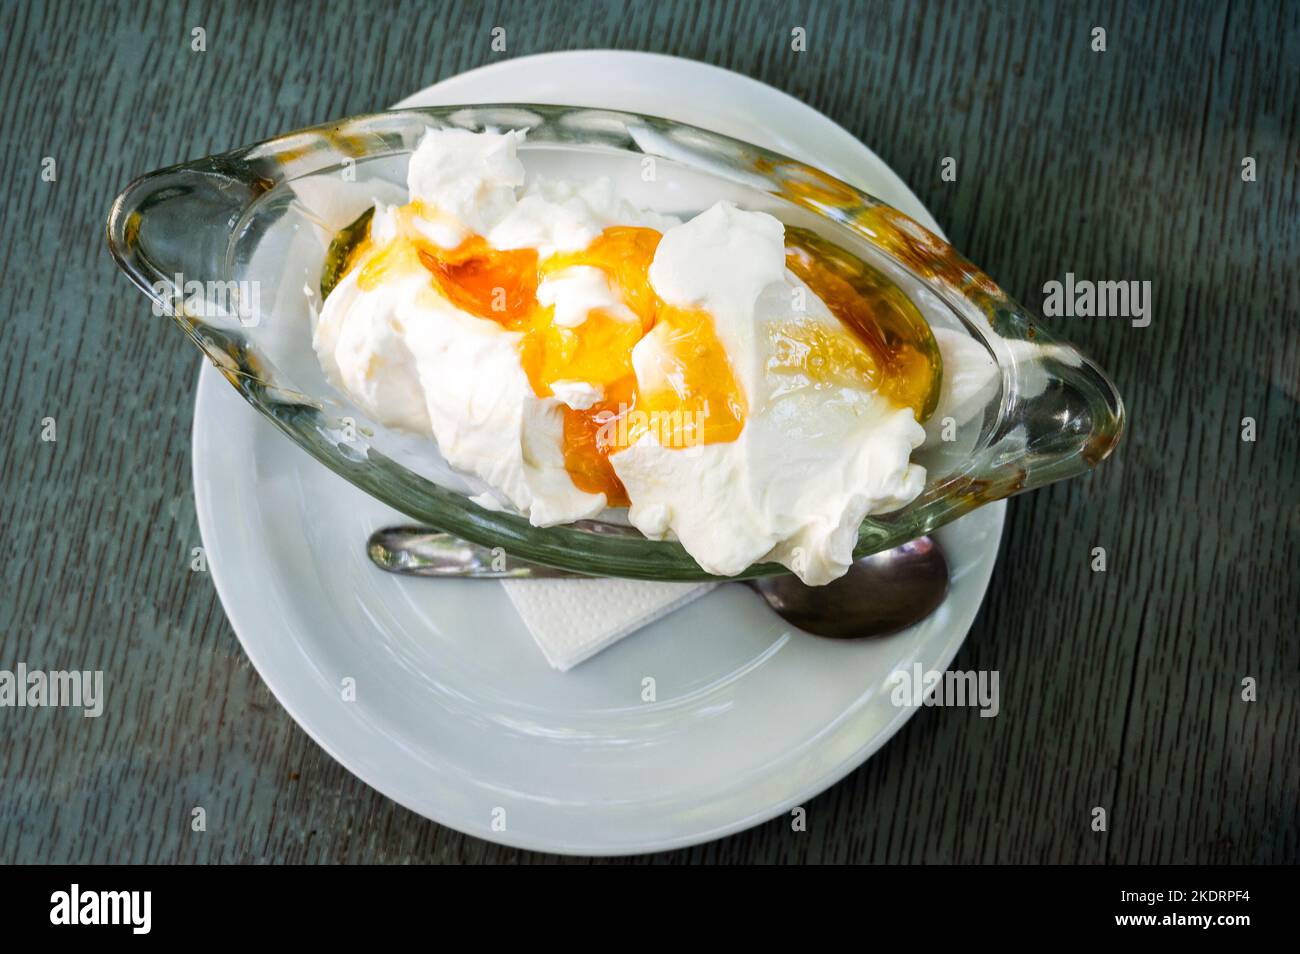 Griechischer Joghurt mit Honig im Restaurant Taverne in Griechenland. Traditionell werden griechische Gerichte in einer griechischen Taverne auf authentischen Abendtischen und traditionellen Tischen serviert Stockfoto